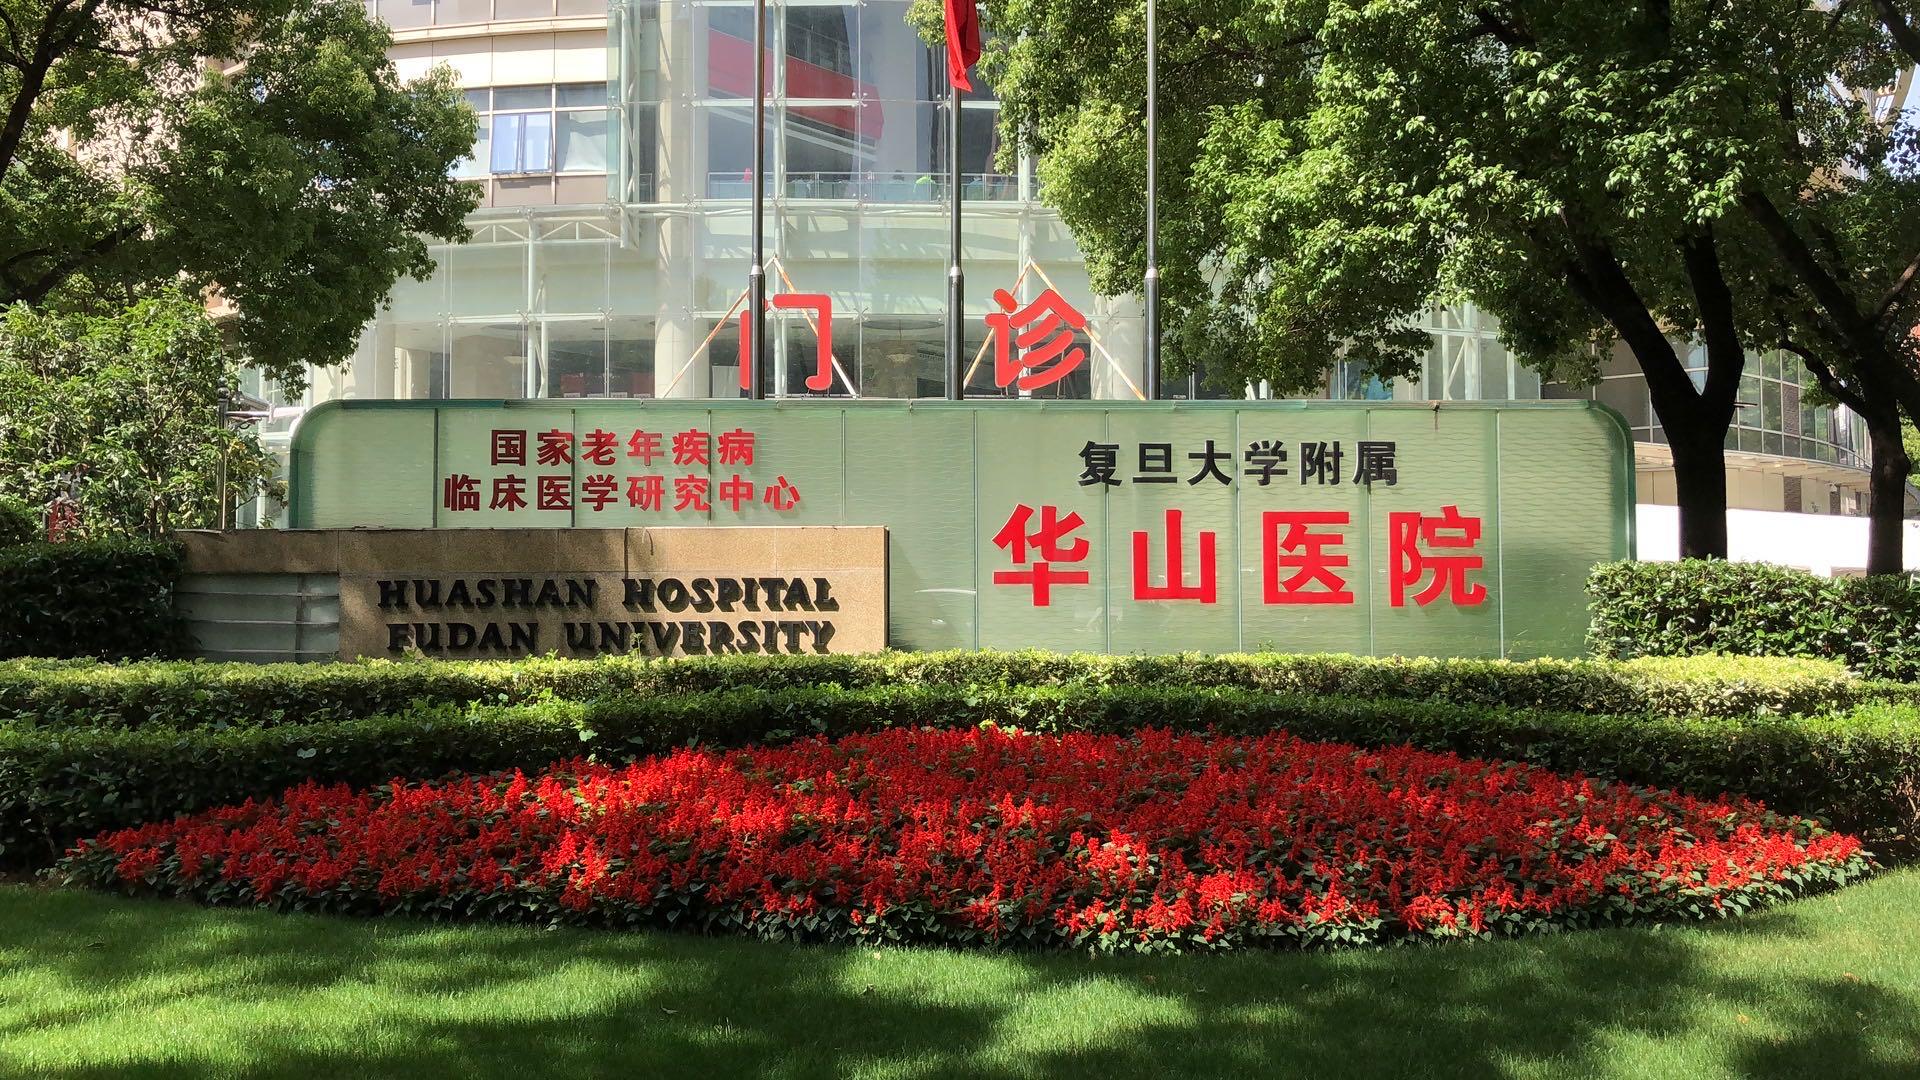 上海华山医院智慧医疗服务 患者看病方便智能高效-搜狐大视野-搜狐新闻